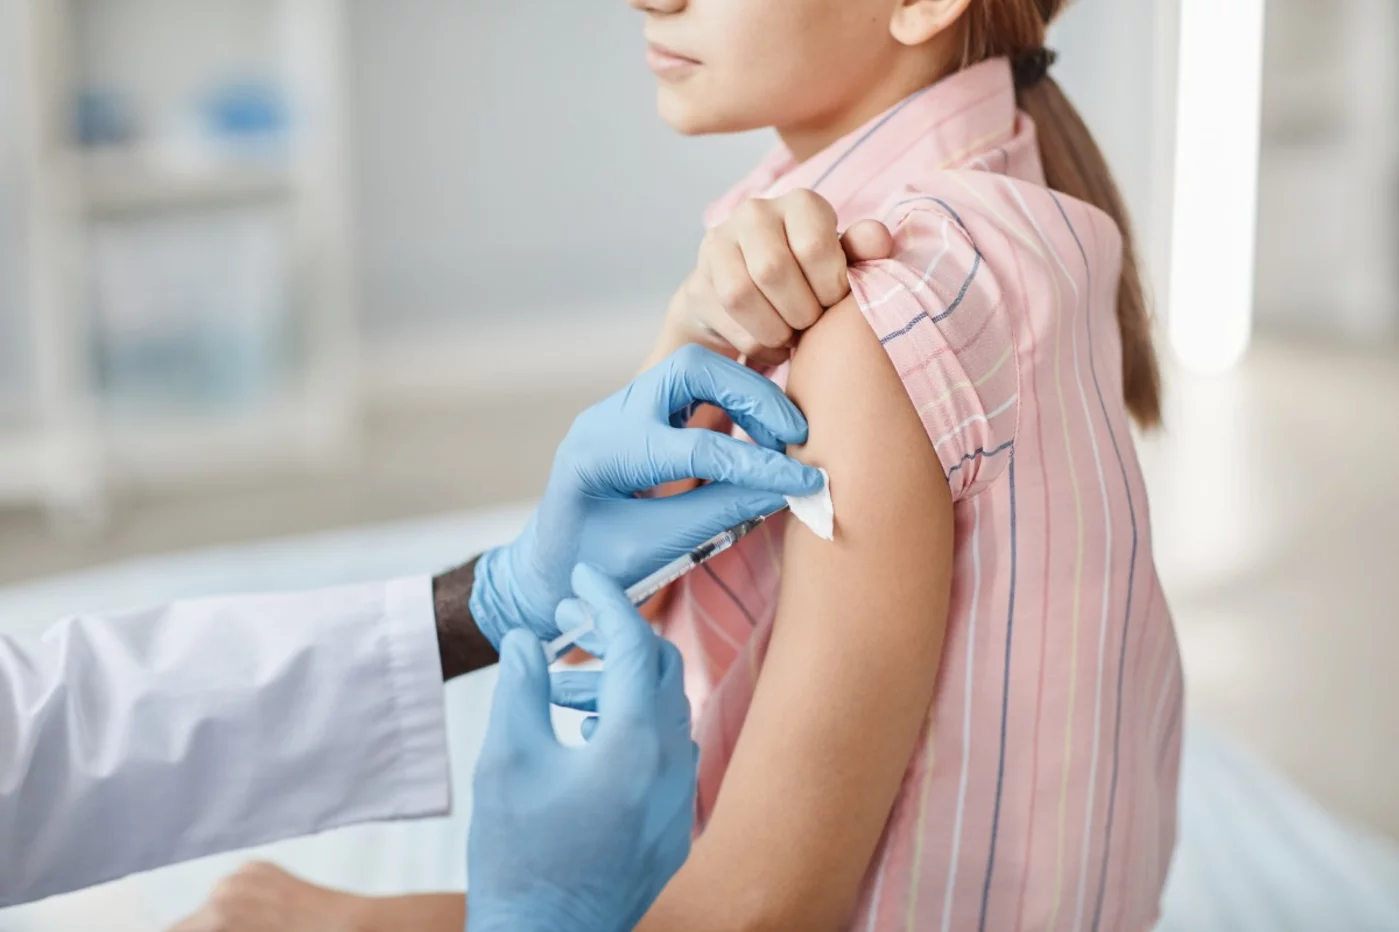 La Coalición para la Vacunación pide a los profesionales sanitarios que contribuyan a garantizar que los menores cumplen con los calendarios vacunales establecidos y con la pauta de inmunización frente a la covid-19.